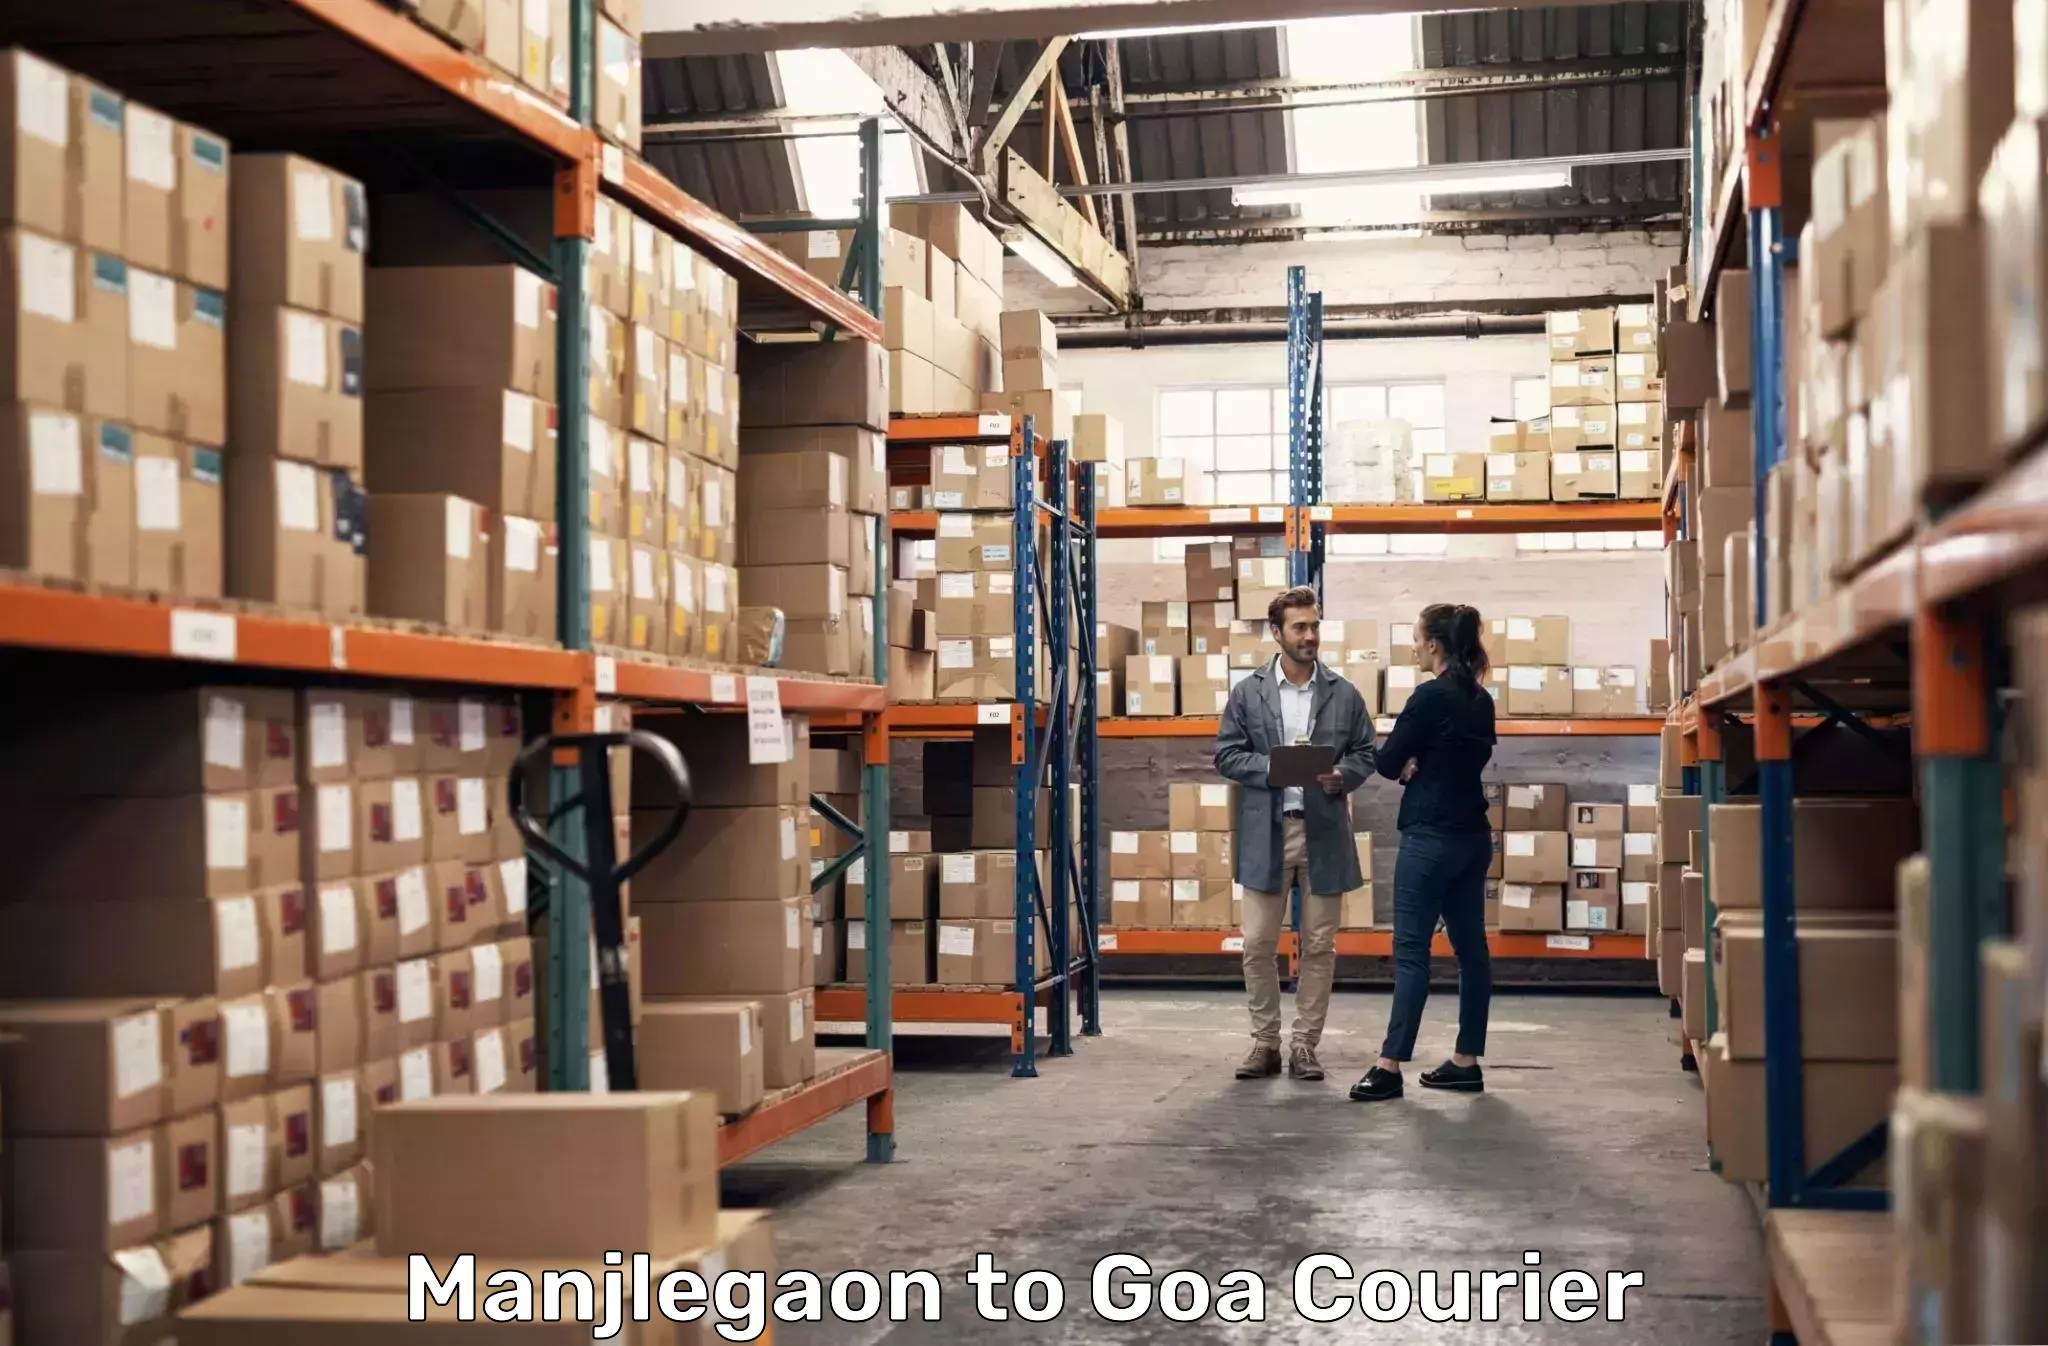 Efficient parcel service Manjlegaon to Goa